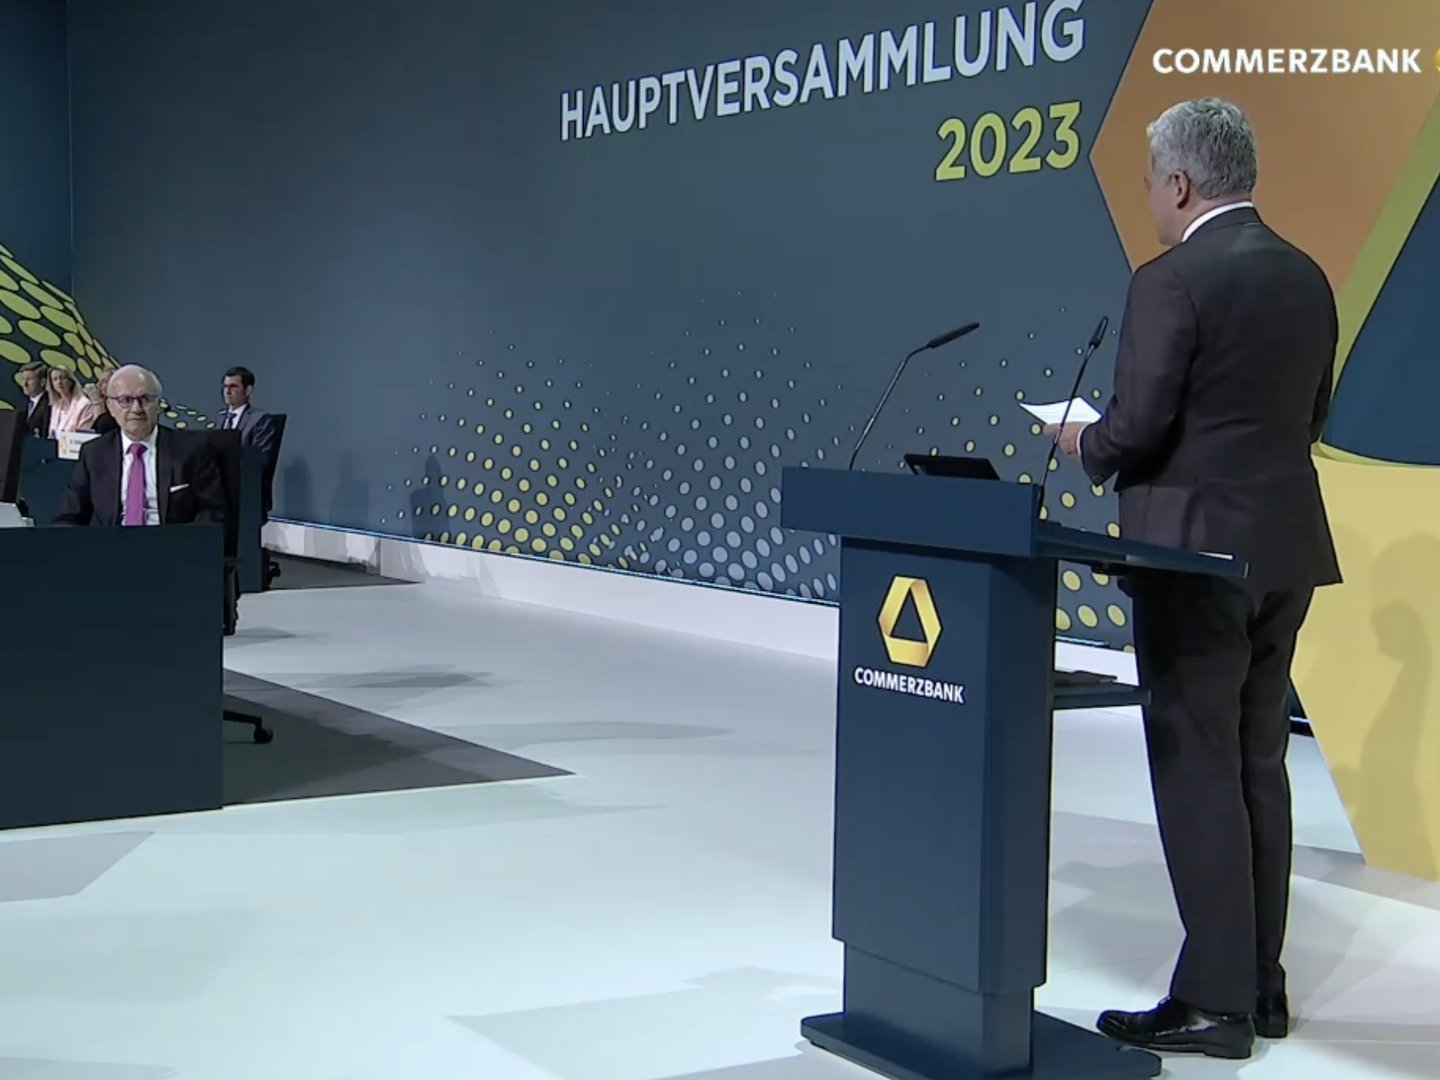 Commerzbankchef Manfred Knof wendet sich in seiner Rede direkt an den scheidenden Aufsichtsratschef Helmut Gottschalk. | Foto: Screenshot: FinanzBusiness